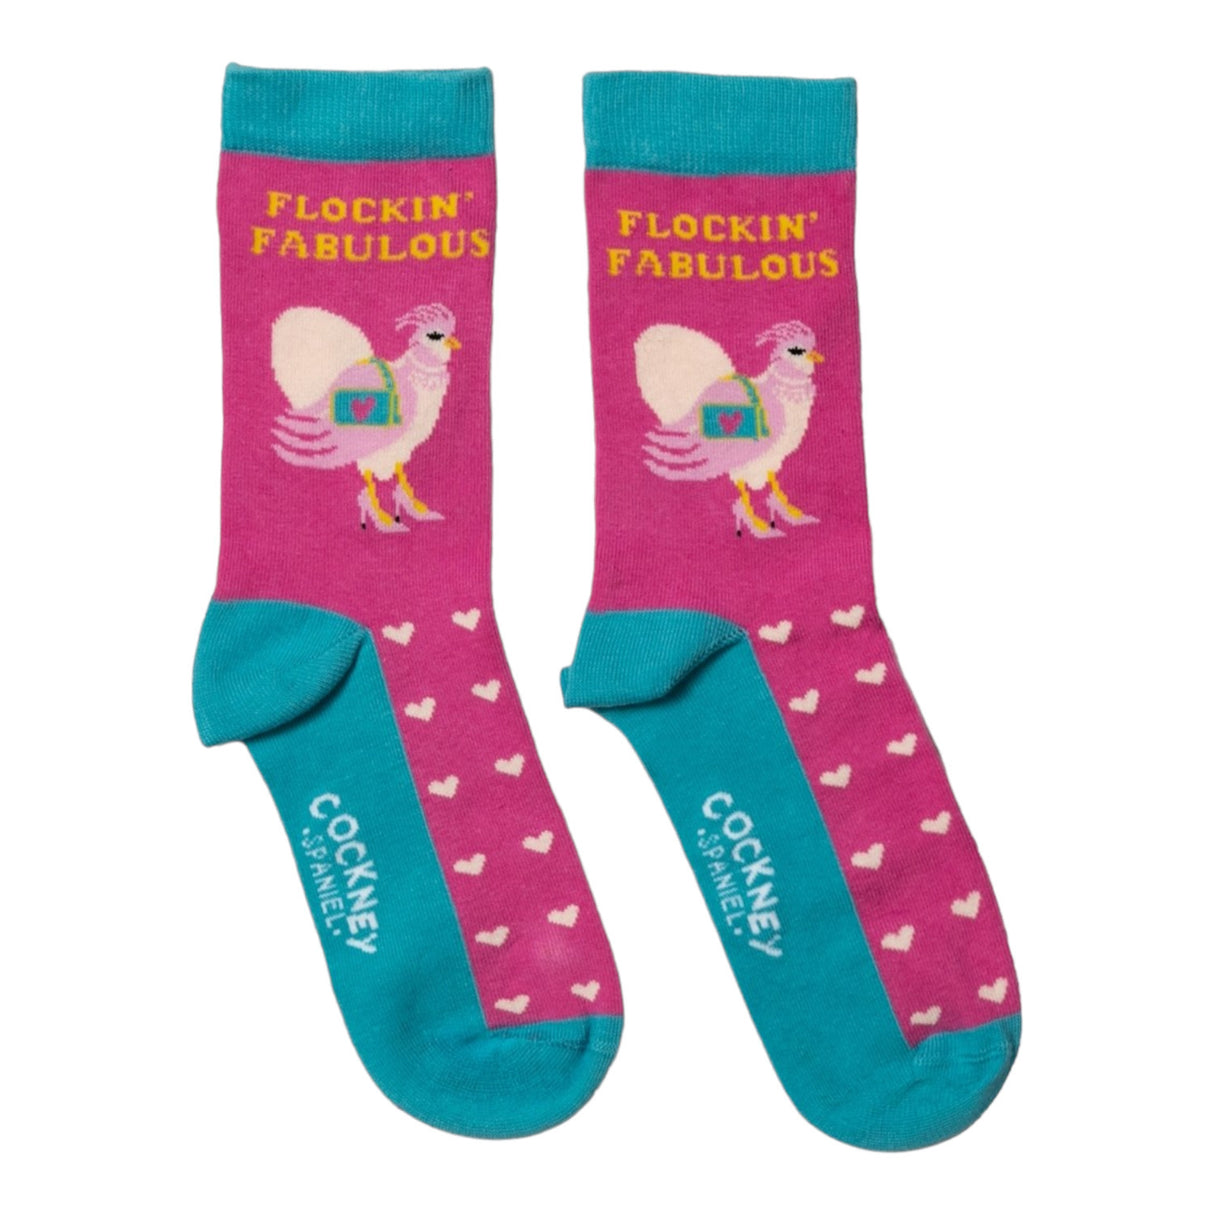 Hot Chick Socken Geburtstagsgeschenk für beste Freundin Huhn Strumpf in 37-42 (3 Paare)